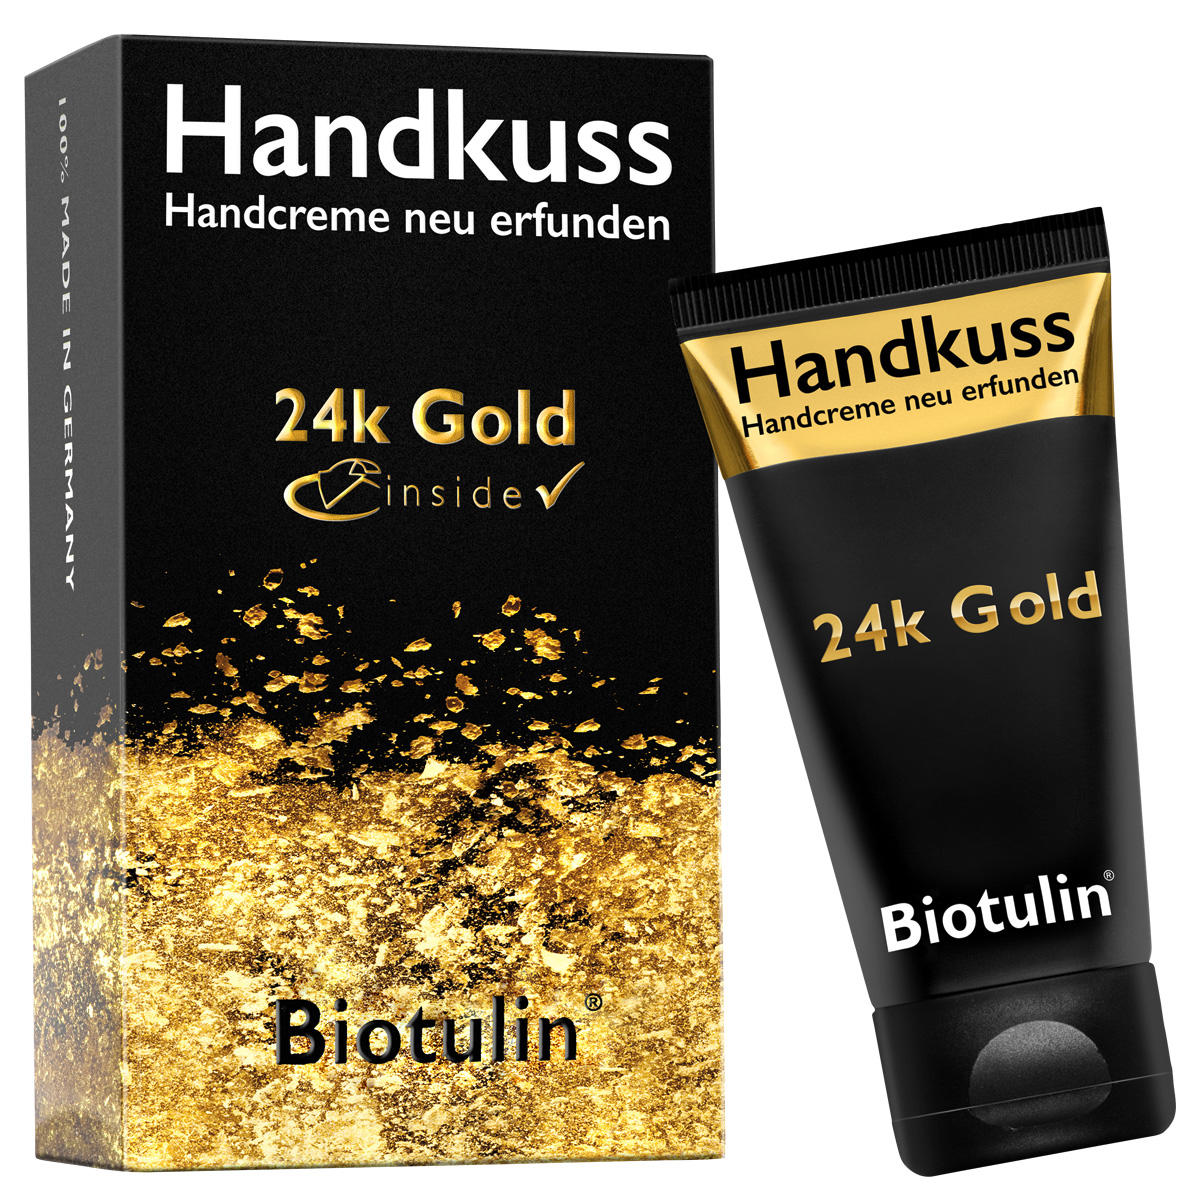 Biotulin Hand kiss hand cream 50 ml - 3